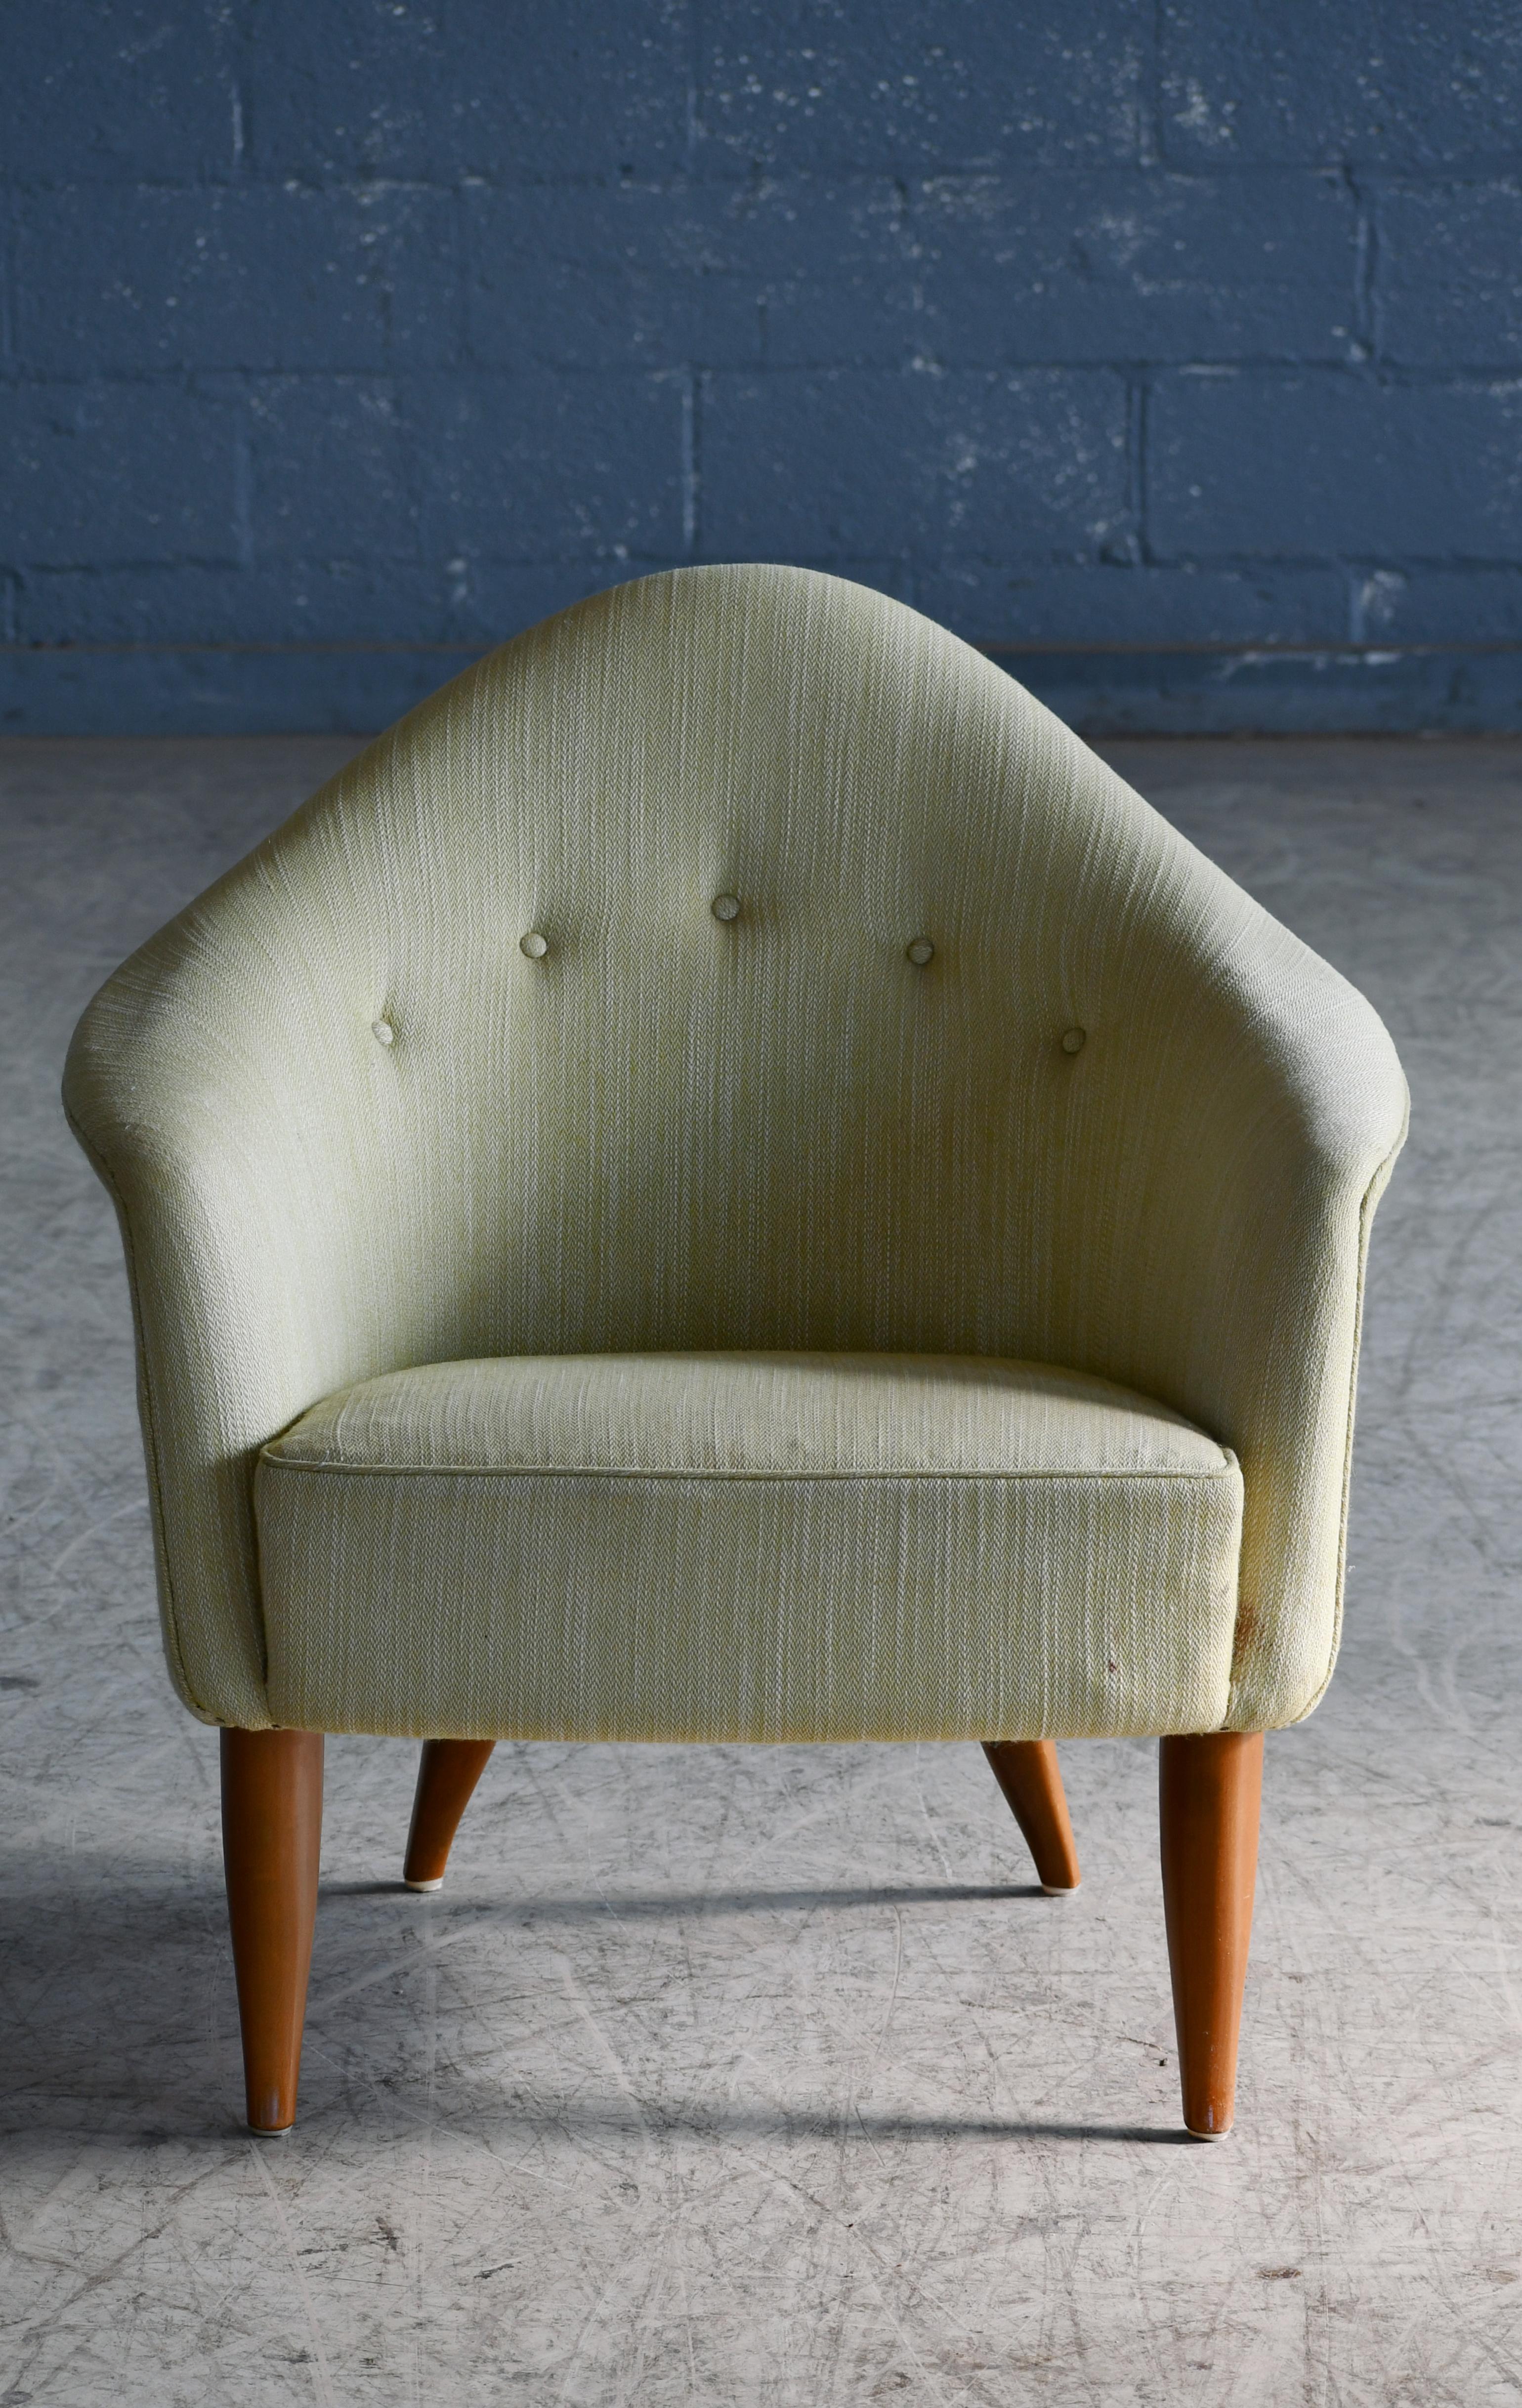 Fantastischer Loungesessel, entworfen von der führenden schwedischen Designerin der Jahrhundertmitte, Kerstin Horlin Holmquist, Modell Little Adam. Der Stuhl gehörte zu einer Designserie namens 